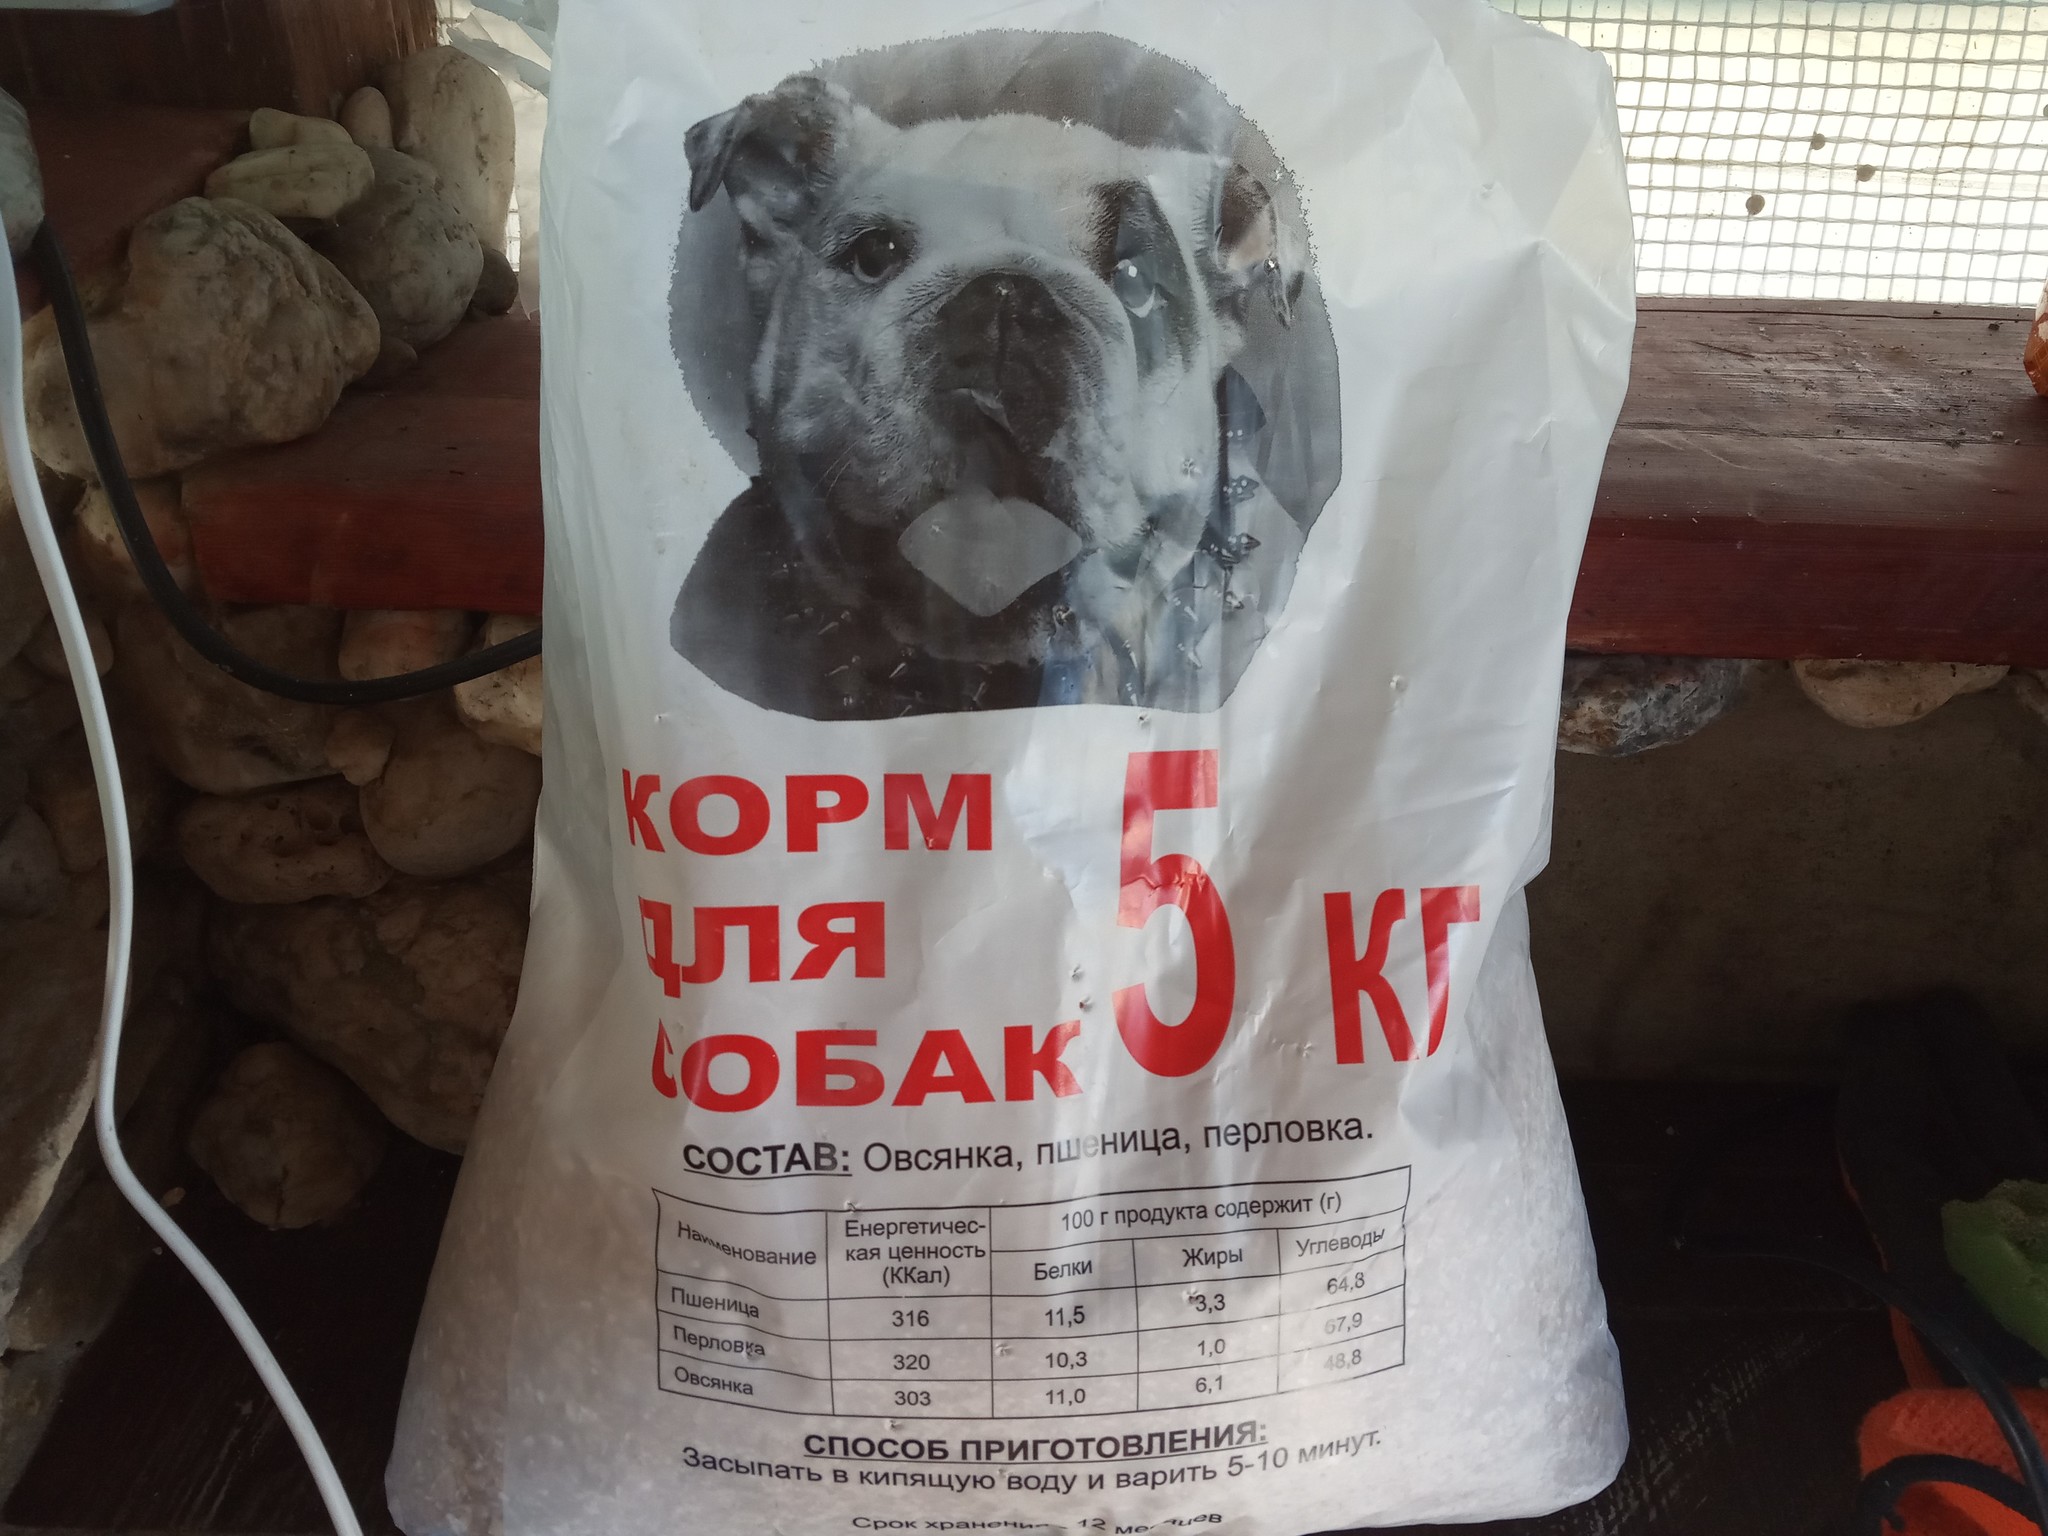 Корм для собак нова. Глебушка корм для собак. Собачий корм из хлеба. Собачий корм в СССР. Монс корм для собак.